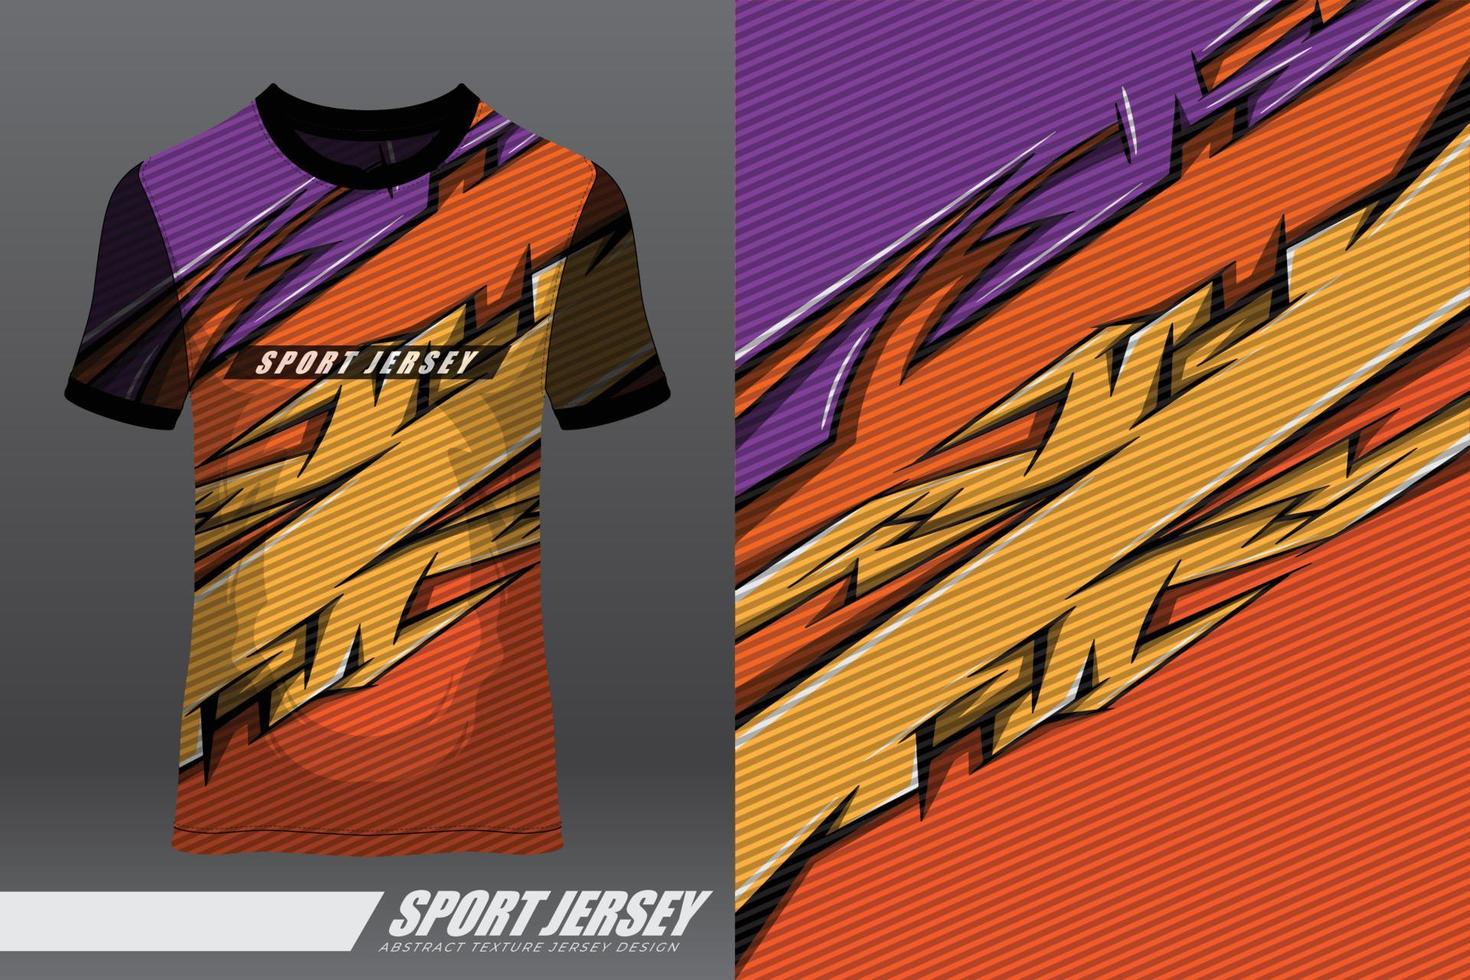 tshirt sportontwerp voor racen, jersey, fietsen, voetbal, gaming, motorcross vector